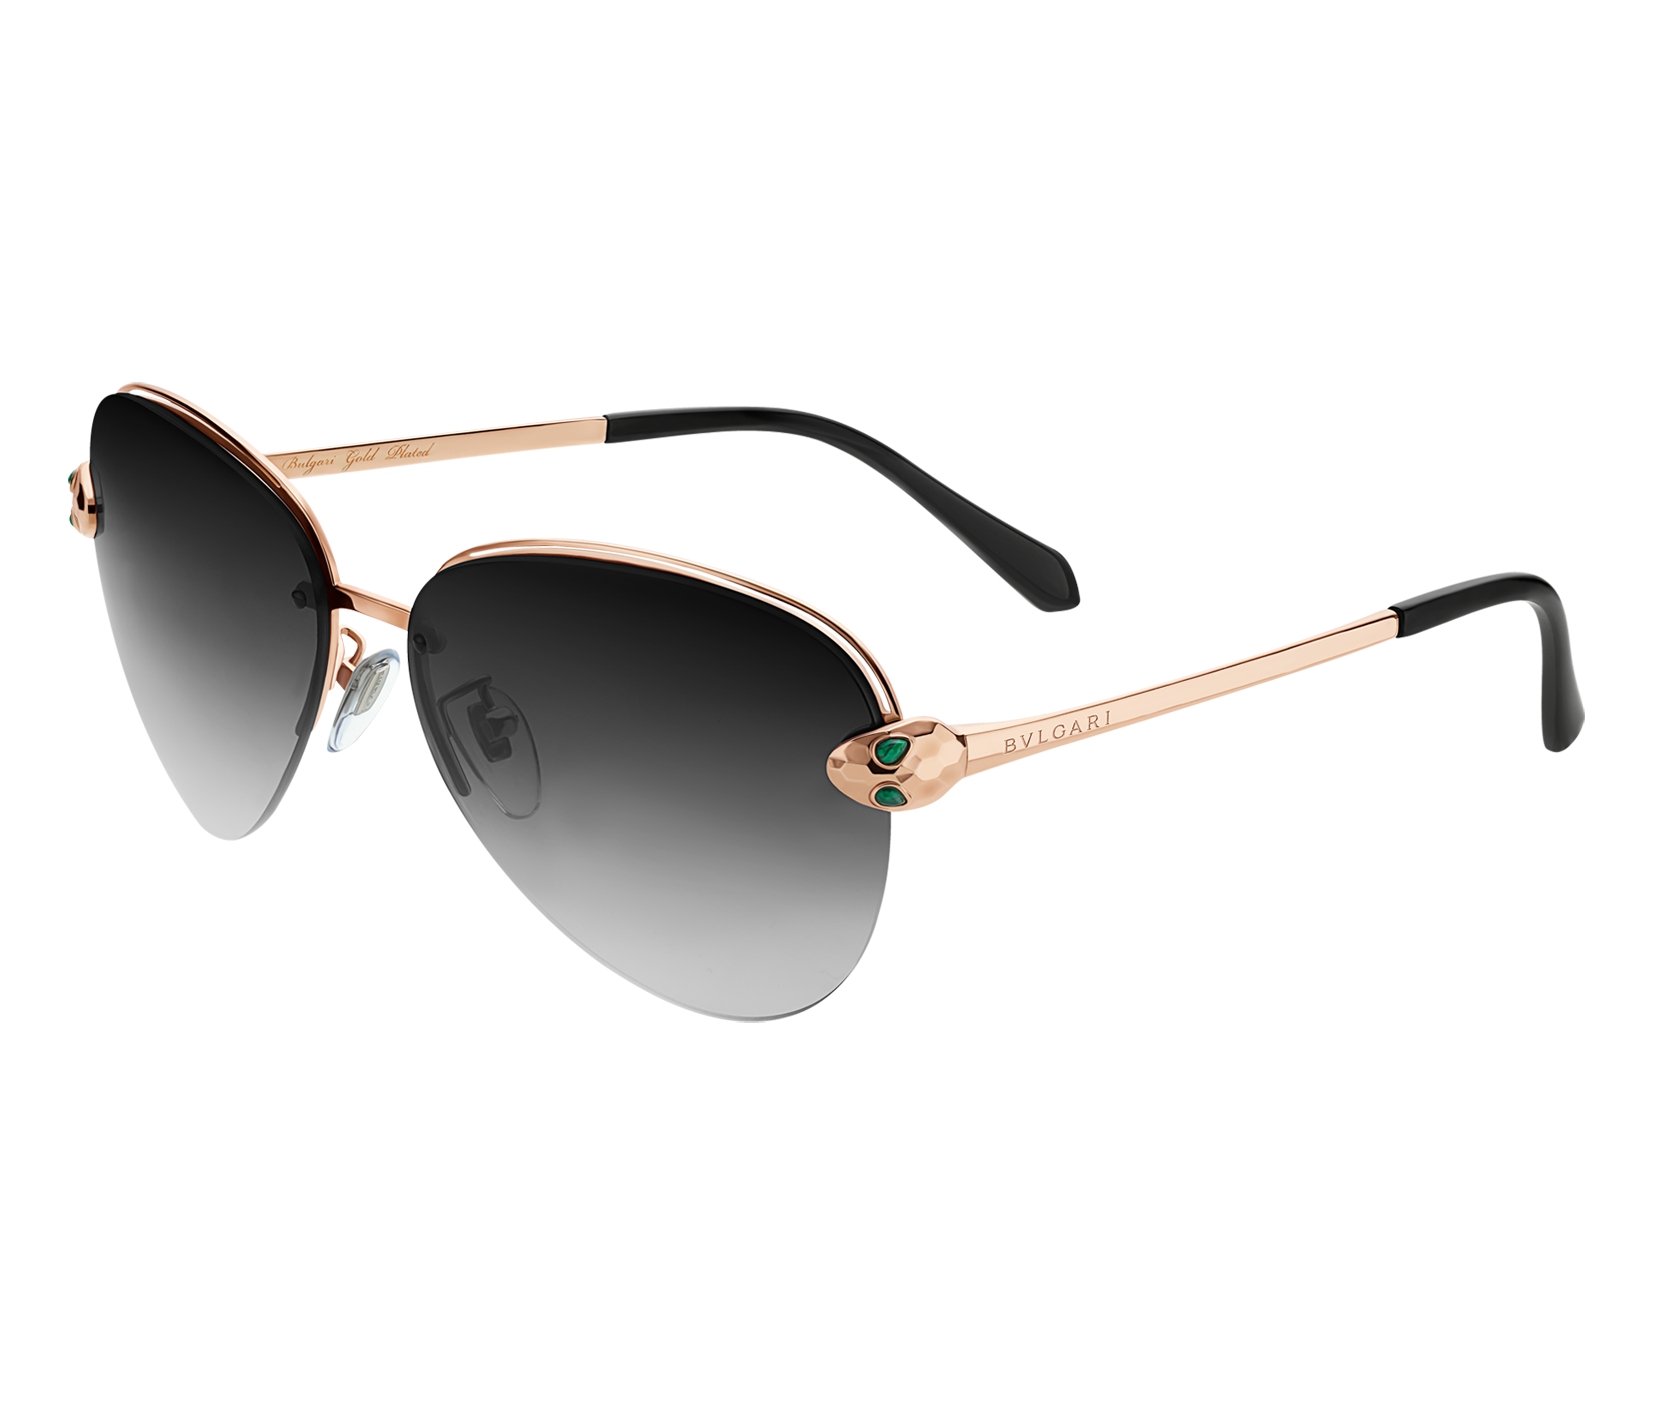 BVLGARI Serpenti Round-frame Rose Gold-plated Mirrored Sunglasses in  Metallic